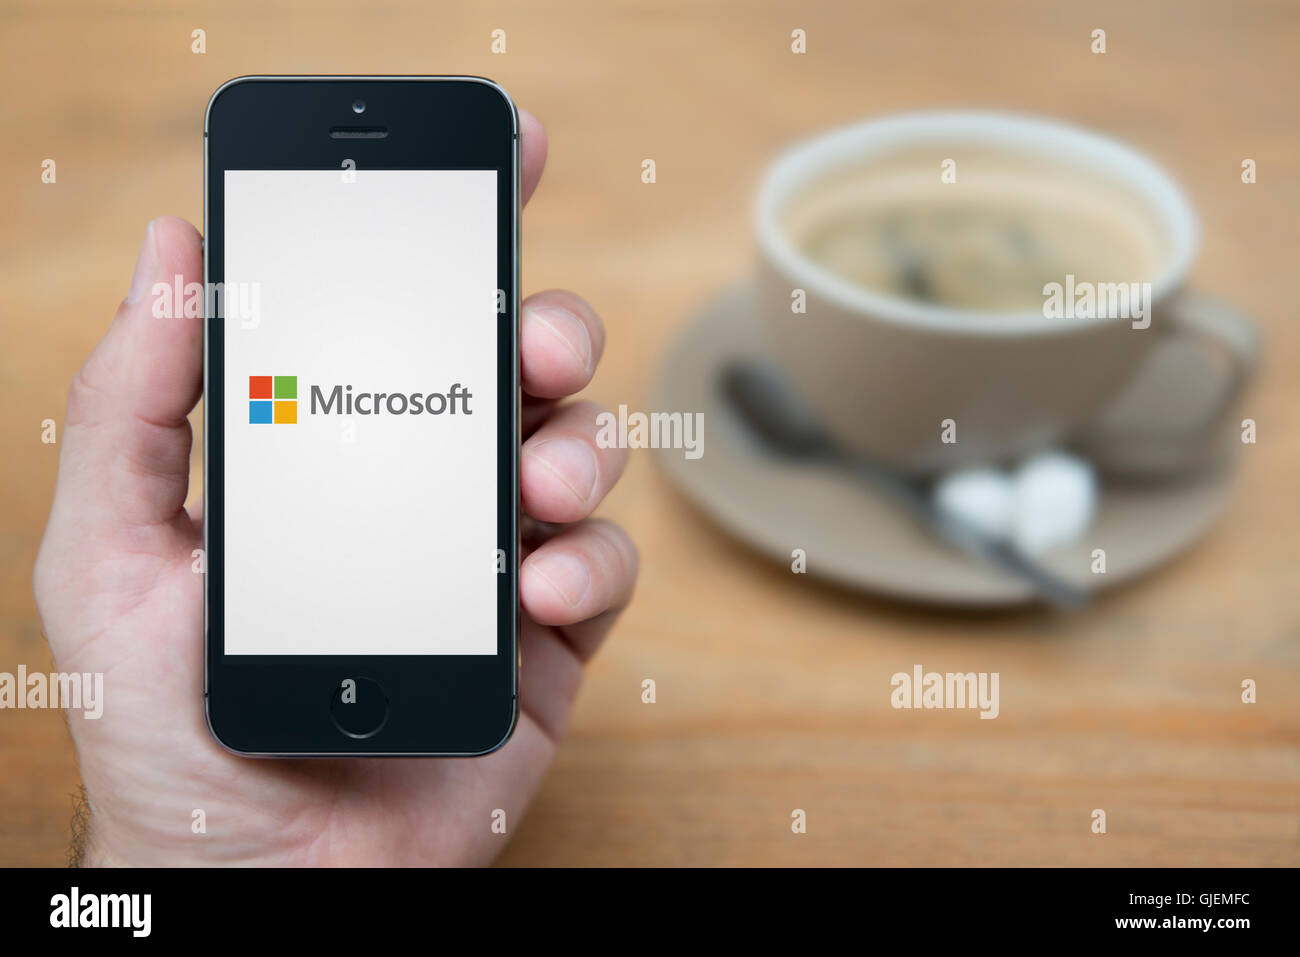 Un homme se penche sur son iPhone qui affiche le logo de Microsoft, alors qu'assis avec une tasse de café (usage éditorial uniquement). Banque D'Images